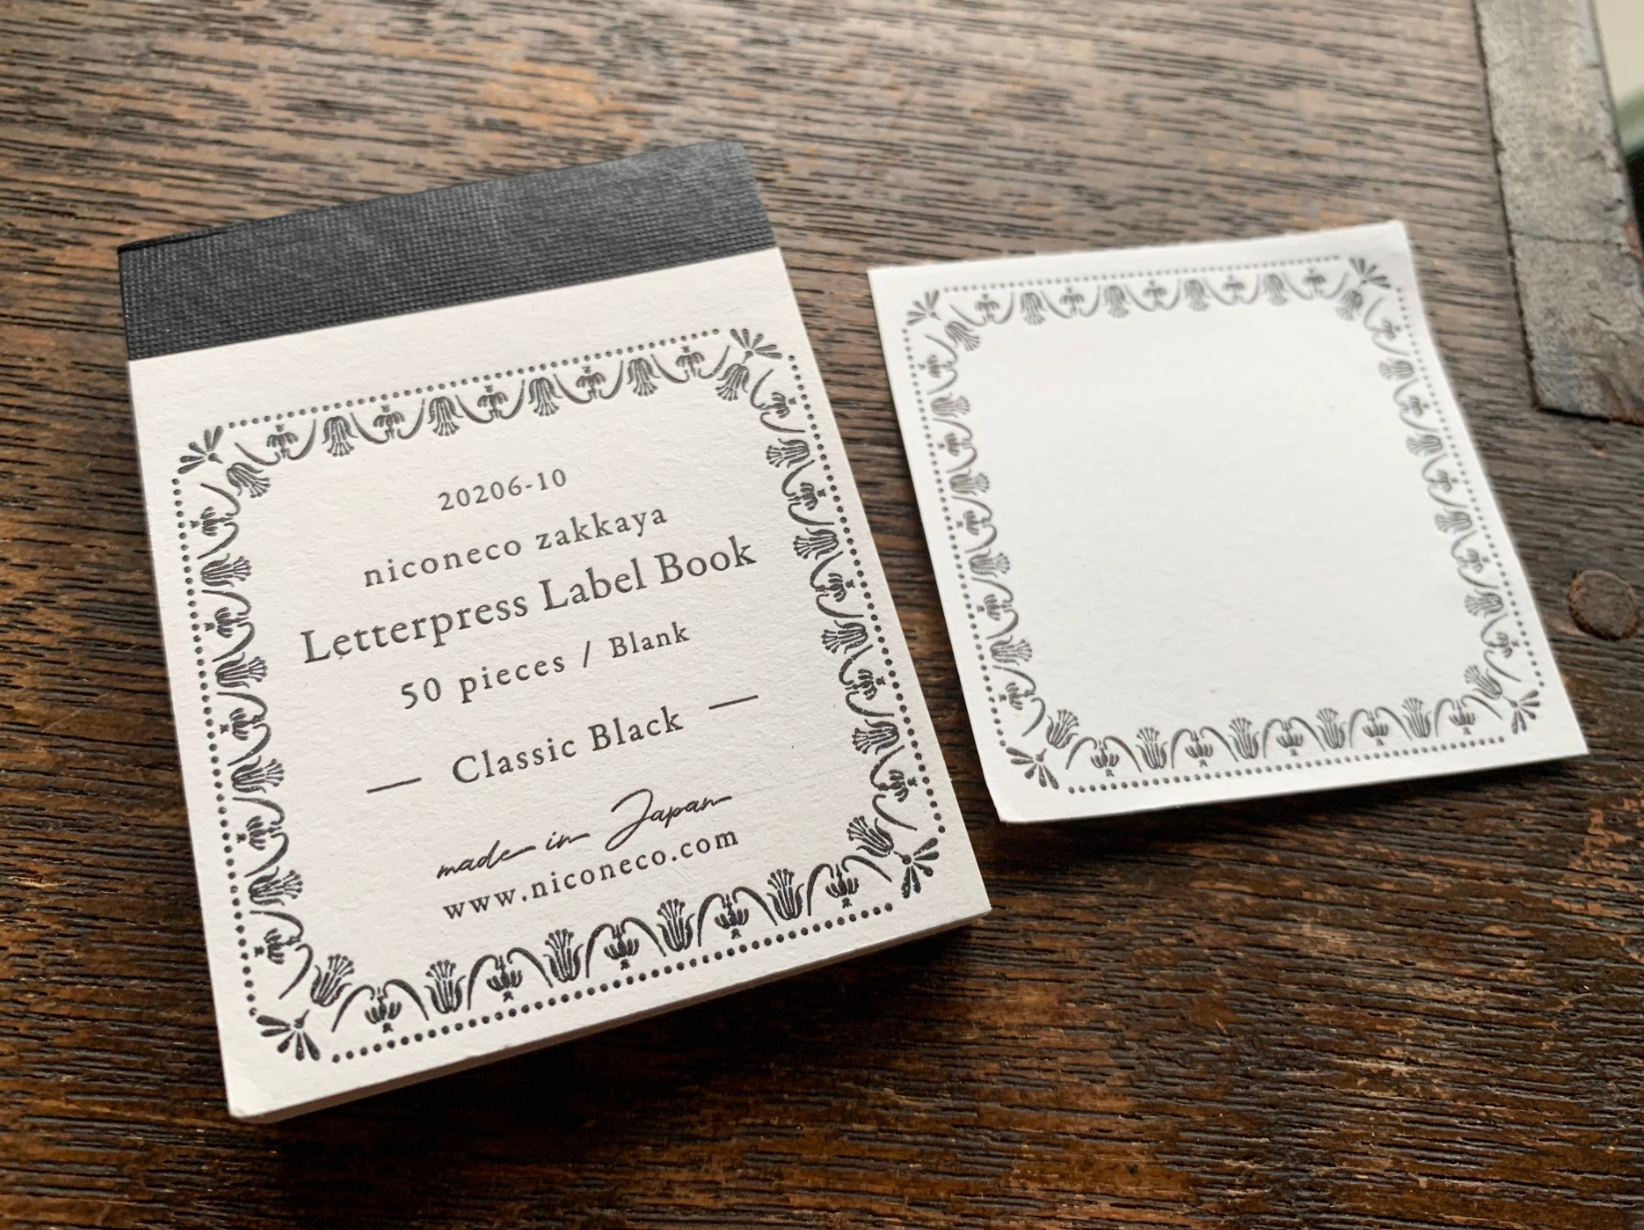 [Letterpress printing] Label book Vol.2 (Classic Black) niconeco collaboration 